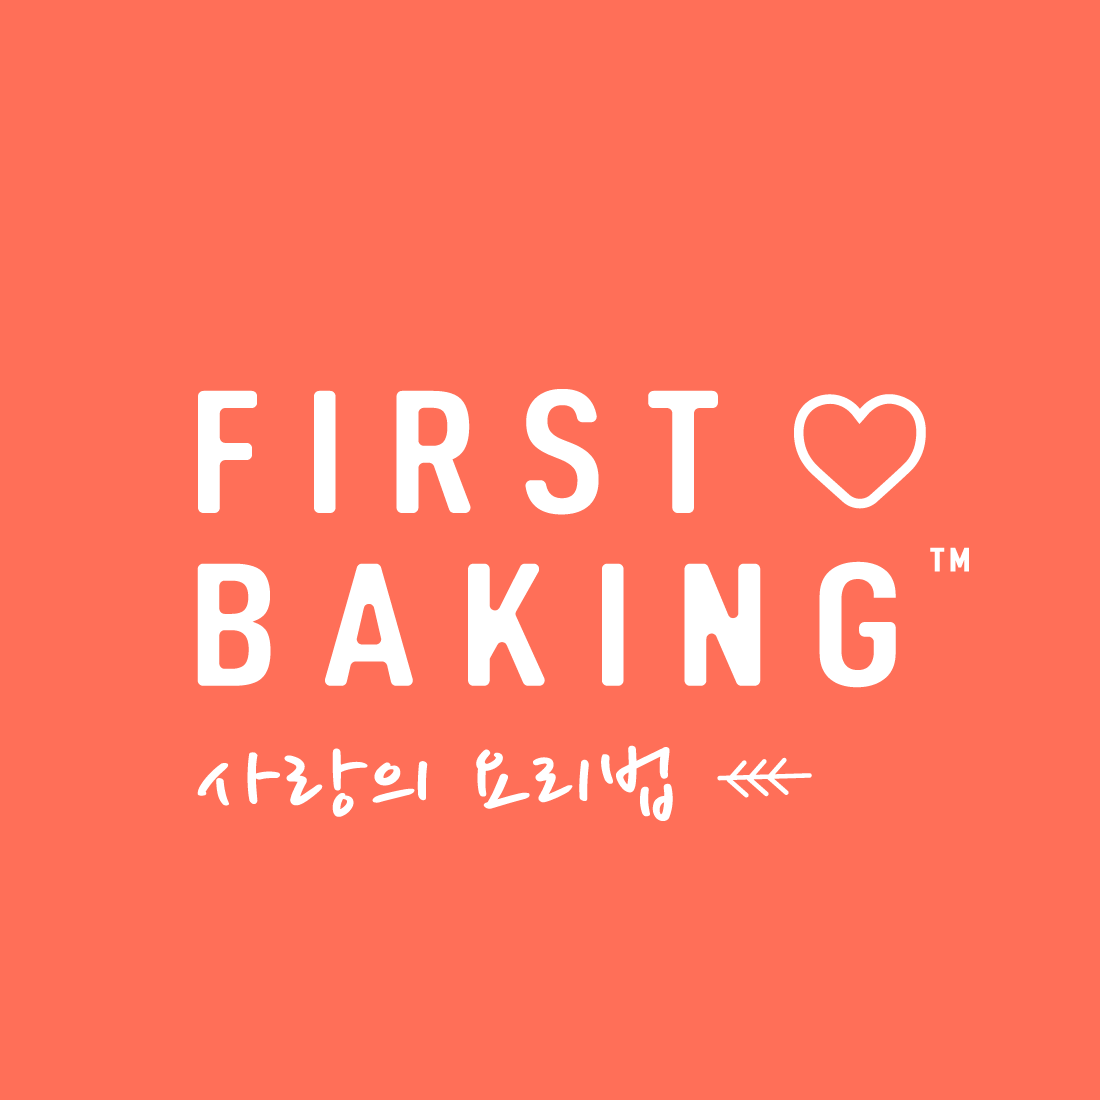 First Baking Desserts